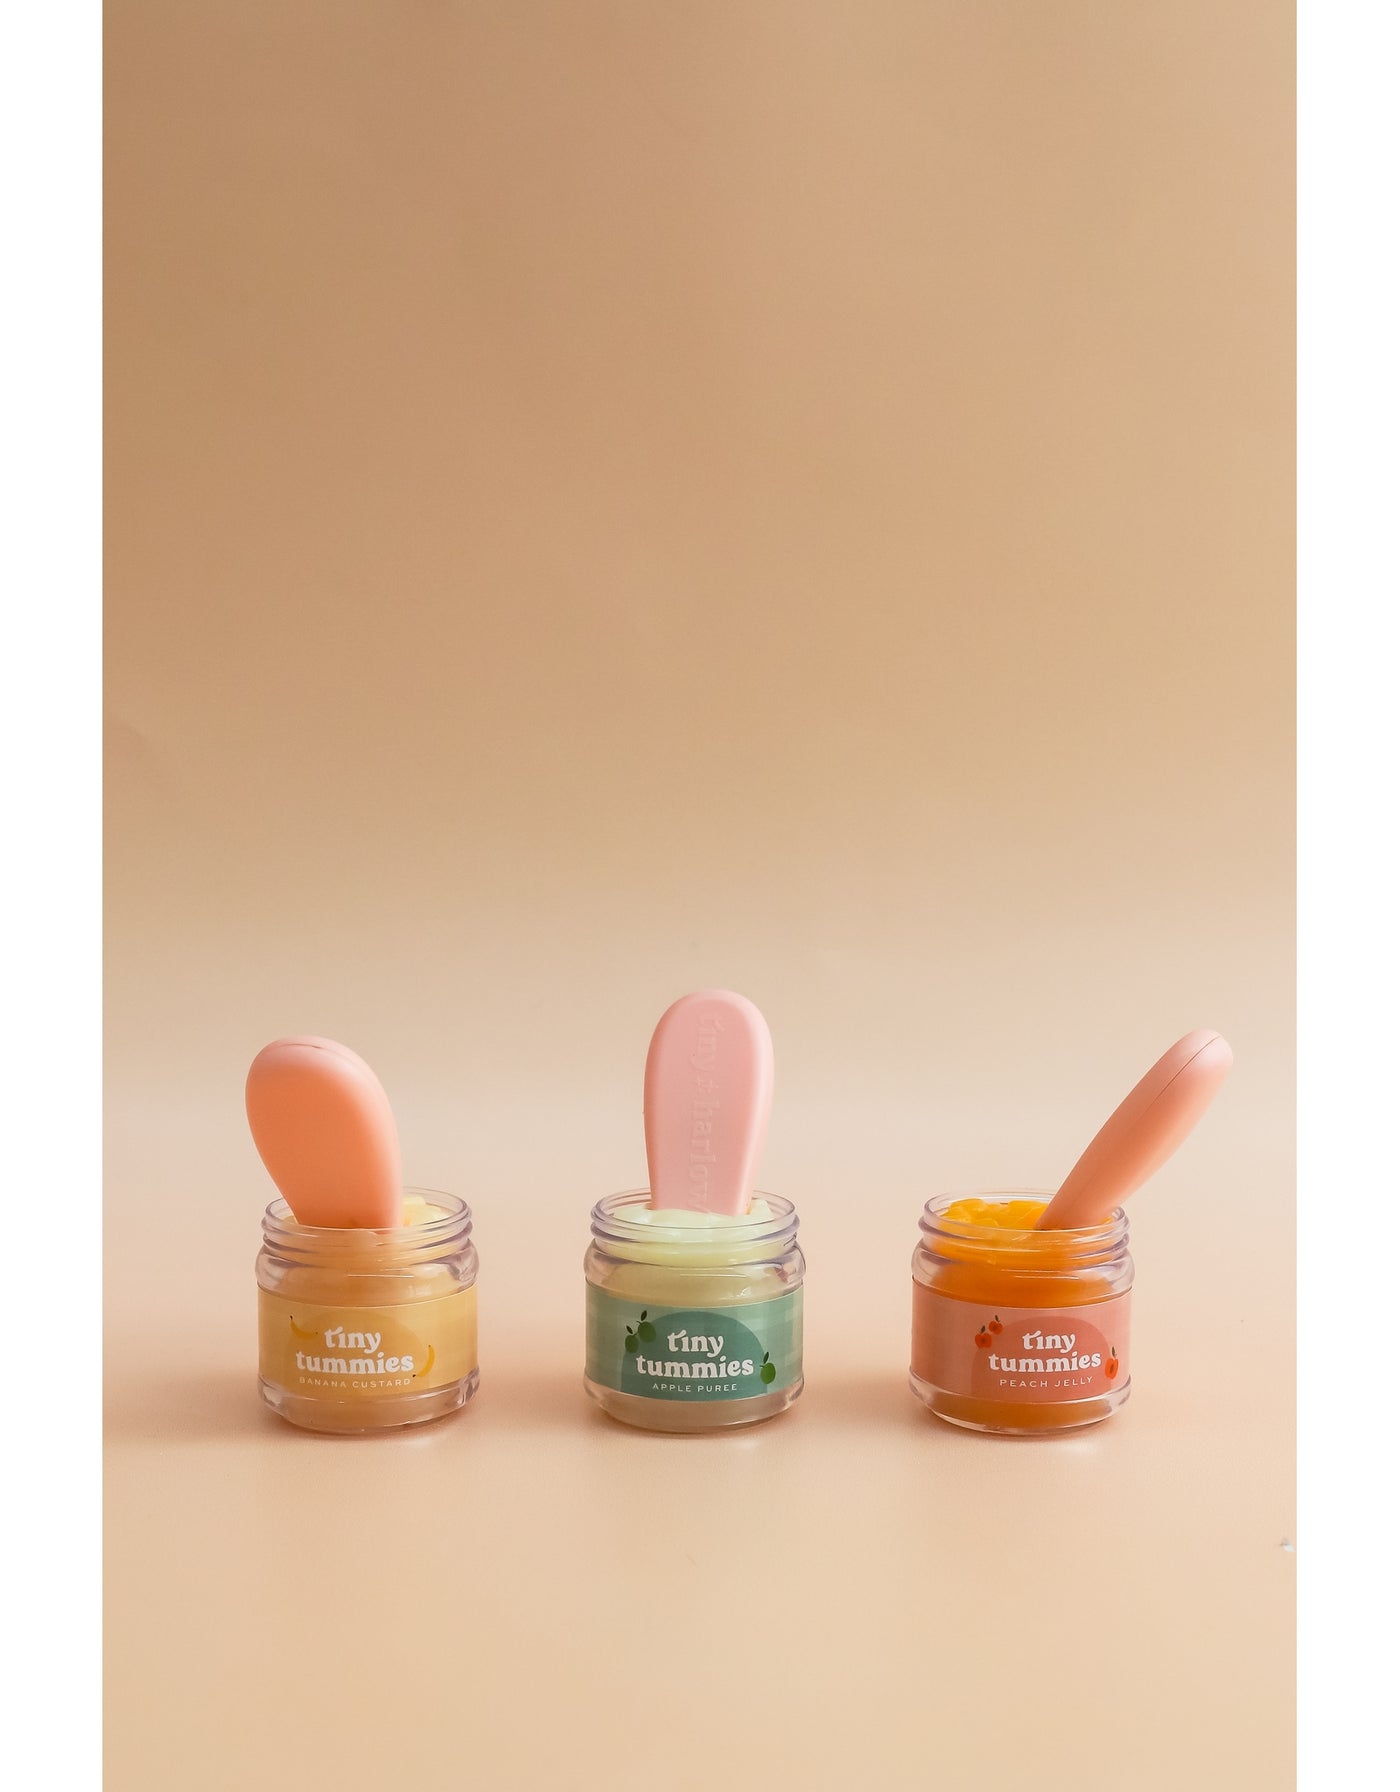 Tiny Tummies Peach Jelly Food Jar and Spoon Set - Tiny Harlow